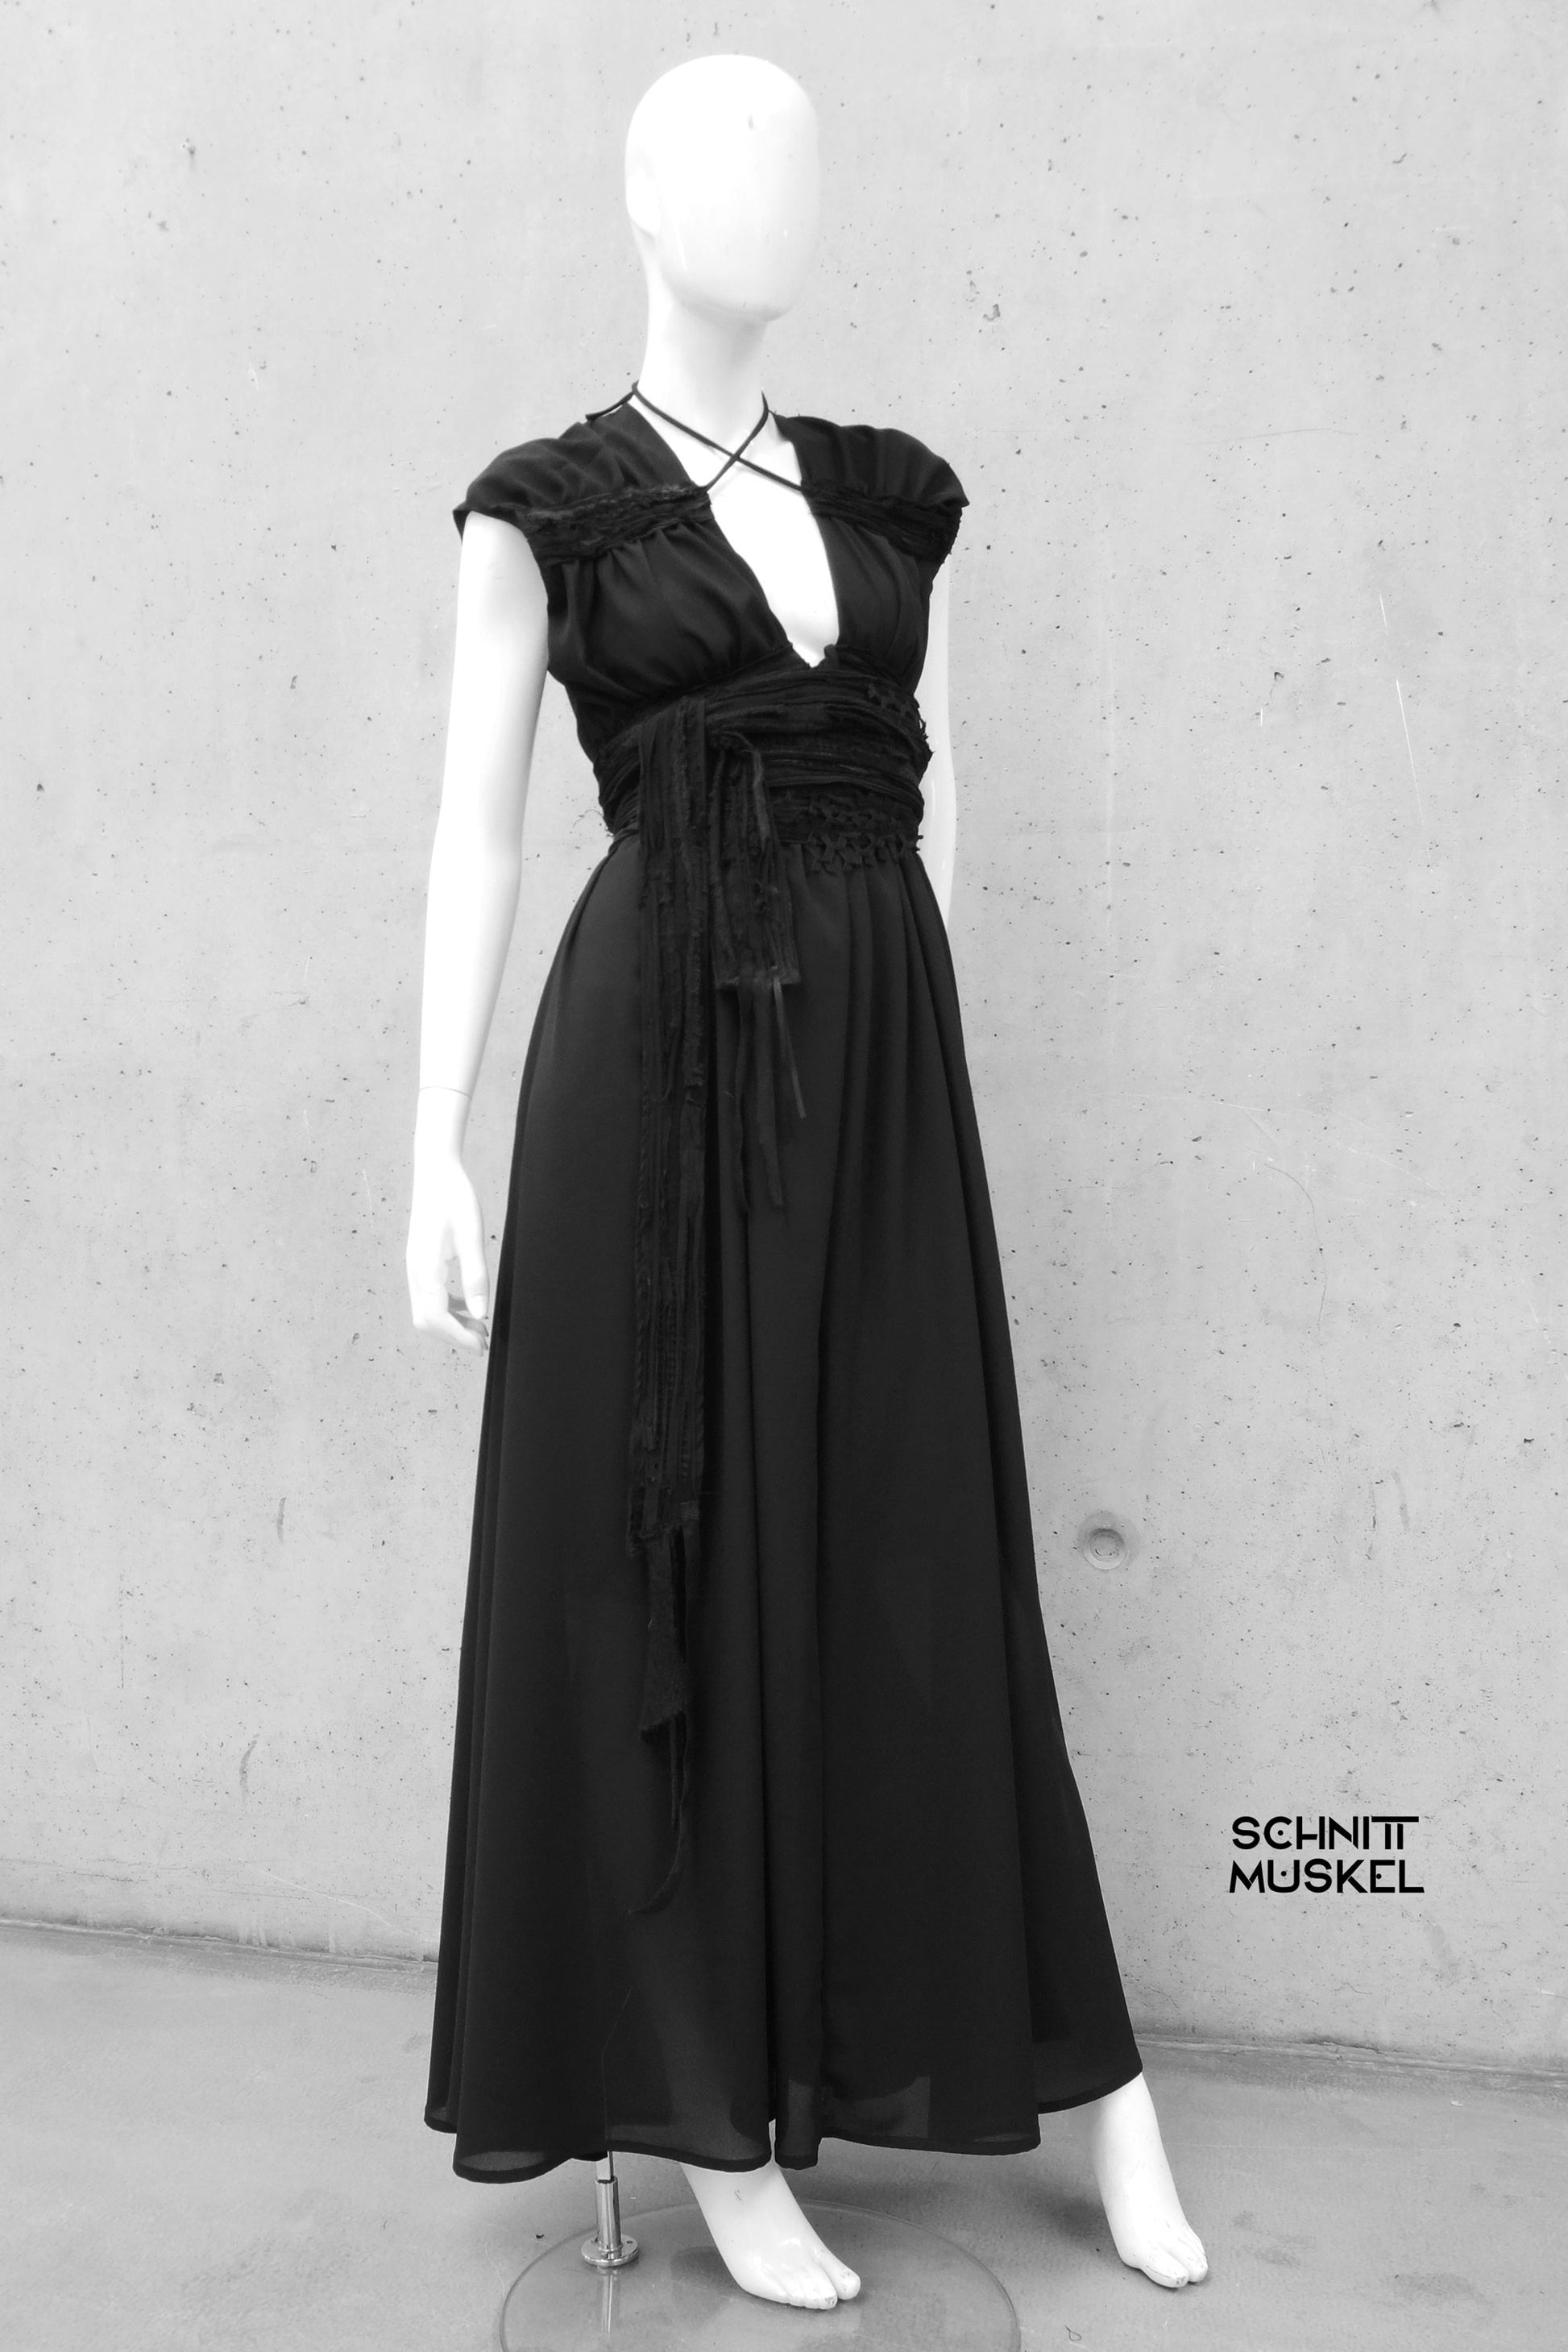 Schwarzes Abendkleid, Gothickleid, darkavantgarde Kleid, darkwear, altweardress, darkavantgardedress, destroyeddress,, gothicdress,